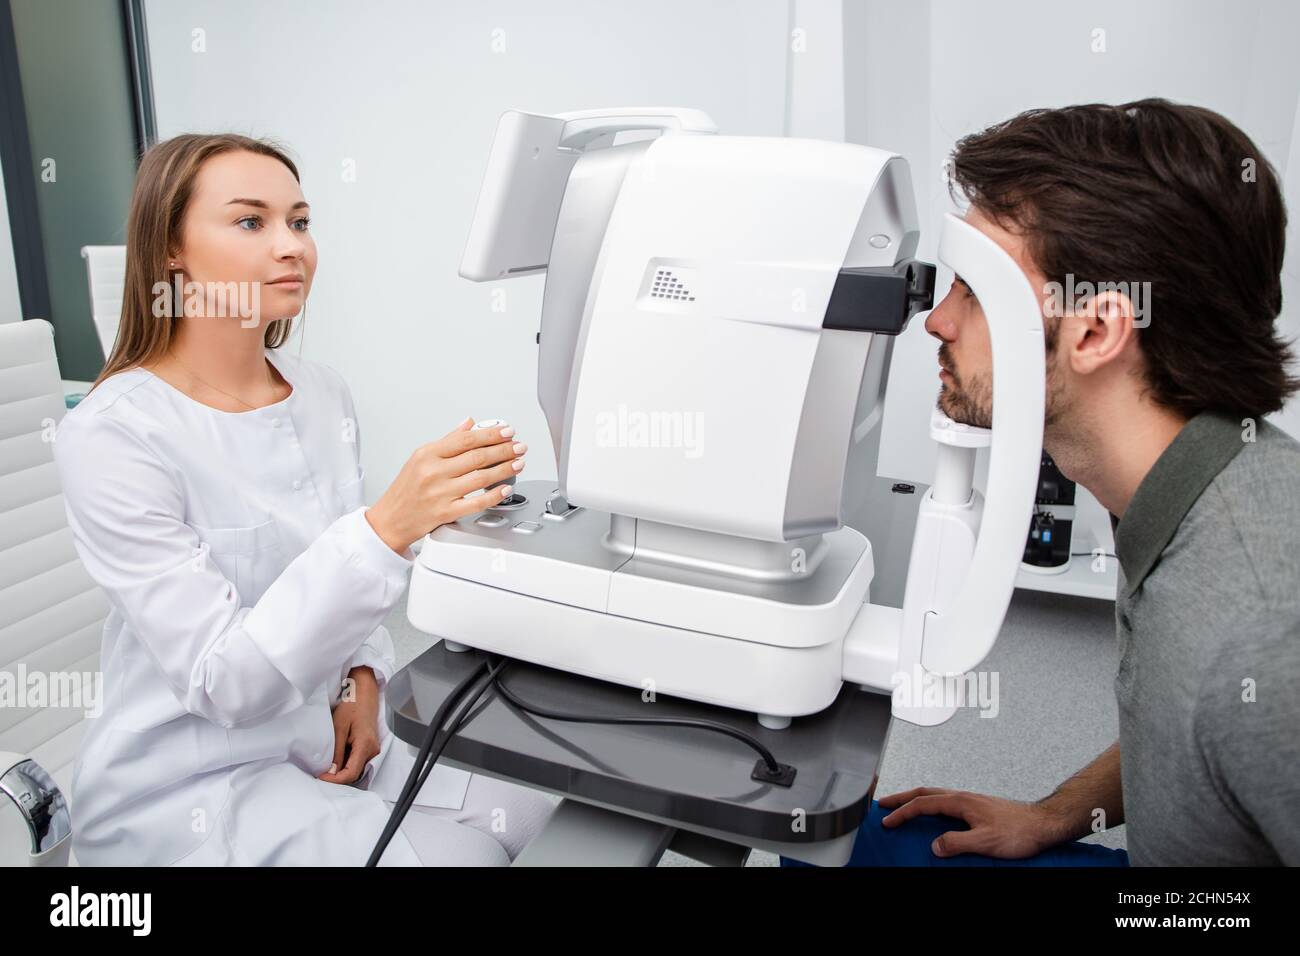 La femme médecin de l'œil fait un examen de vision diagnostique homme adulte. Concept de soins oculaires. Correction de la vision Banque D'Images